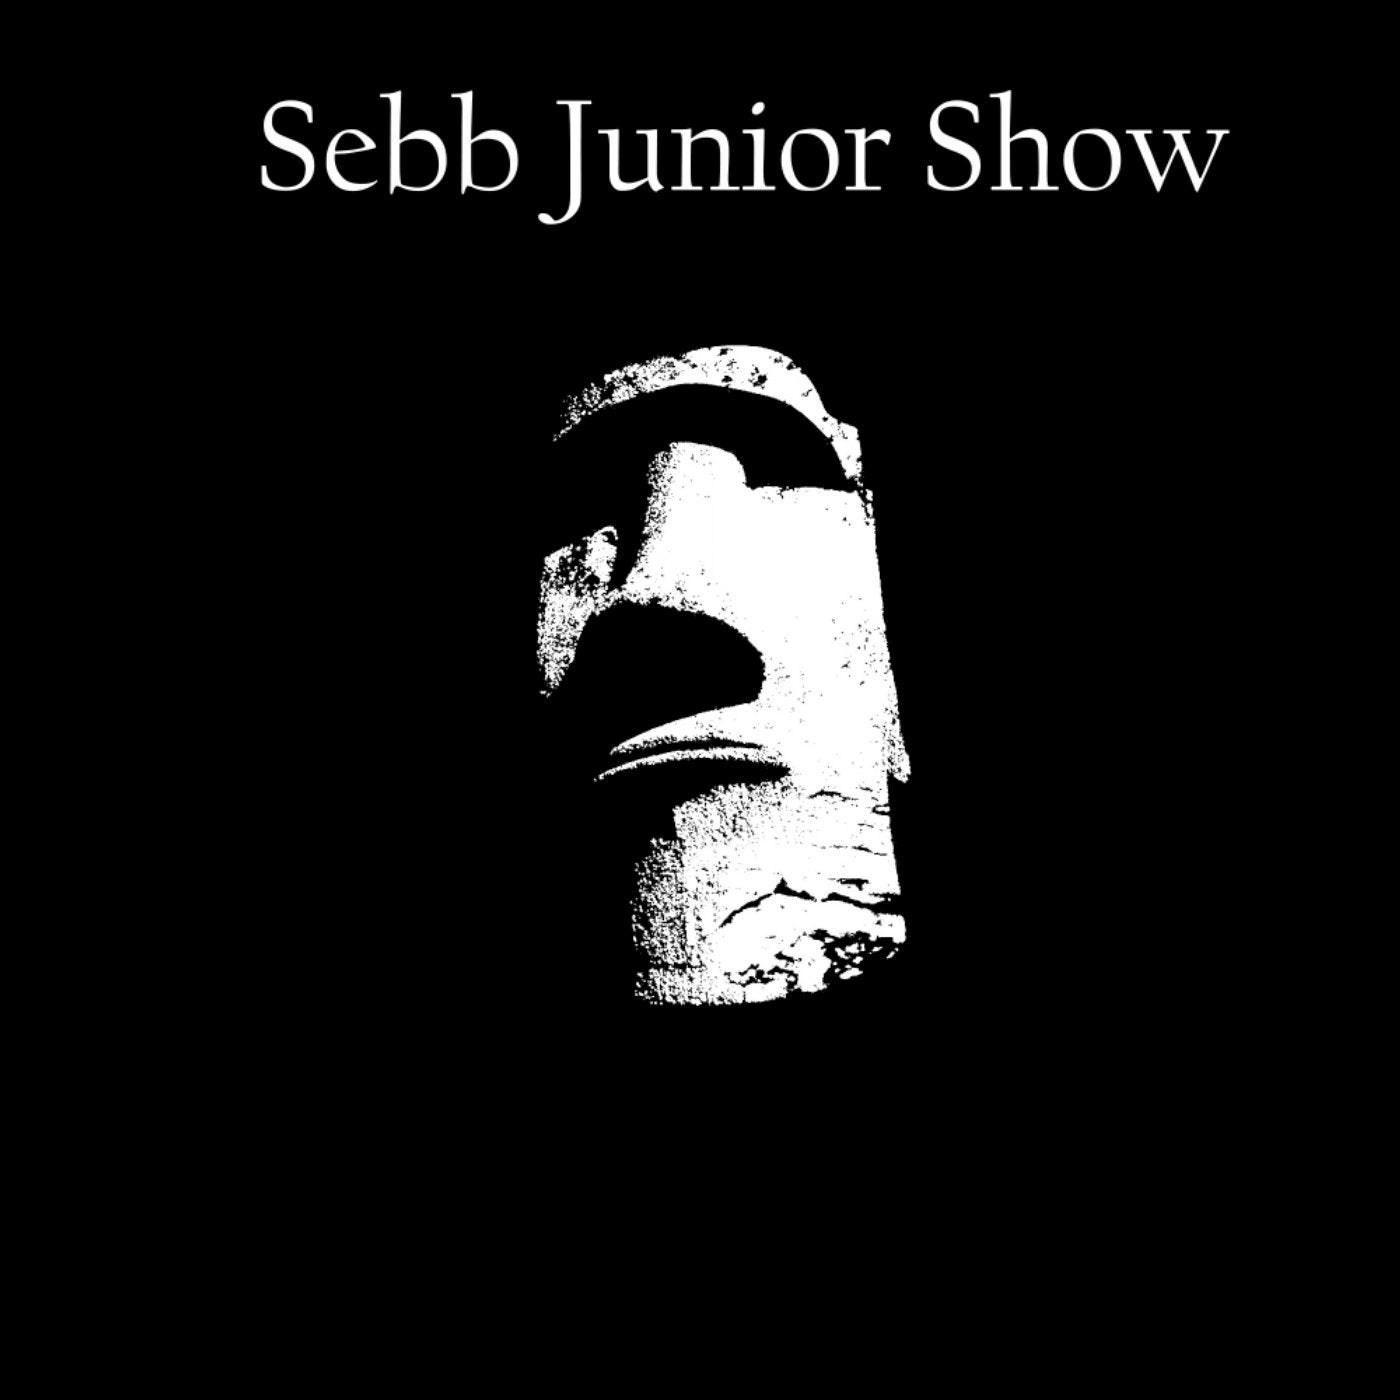 Sebb Junior Show